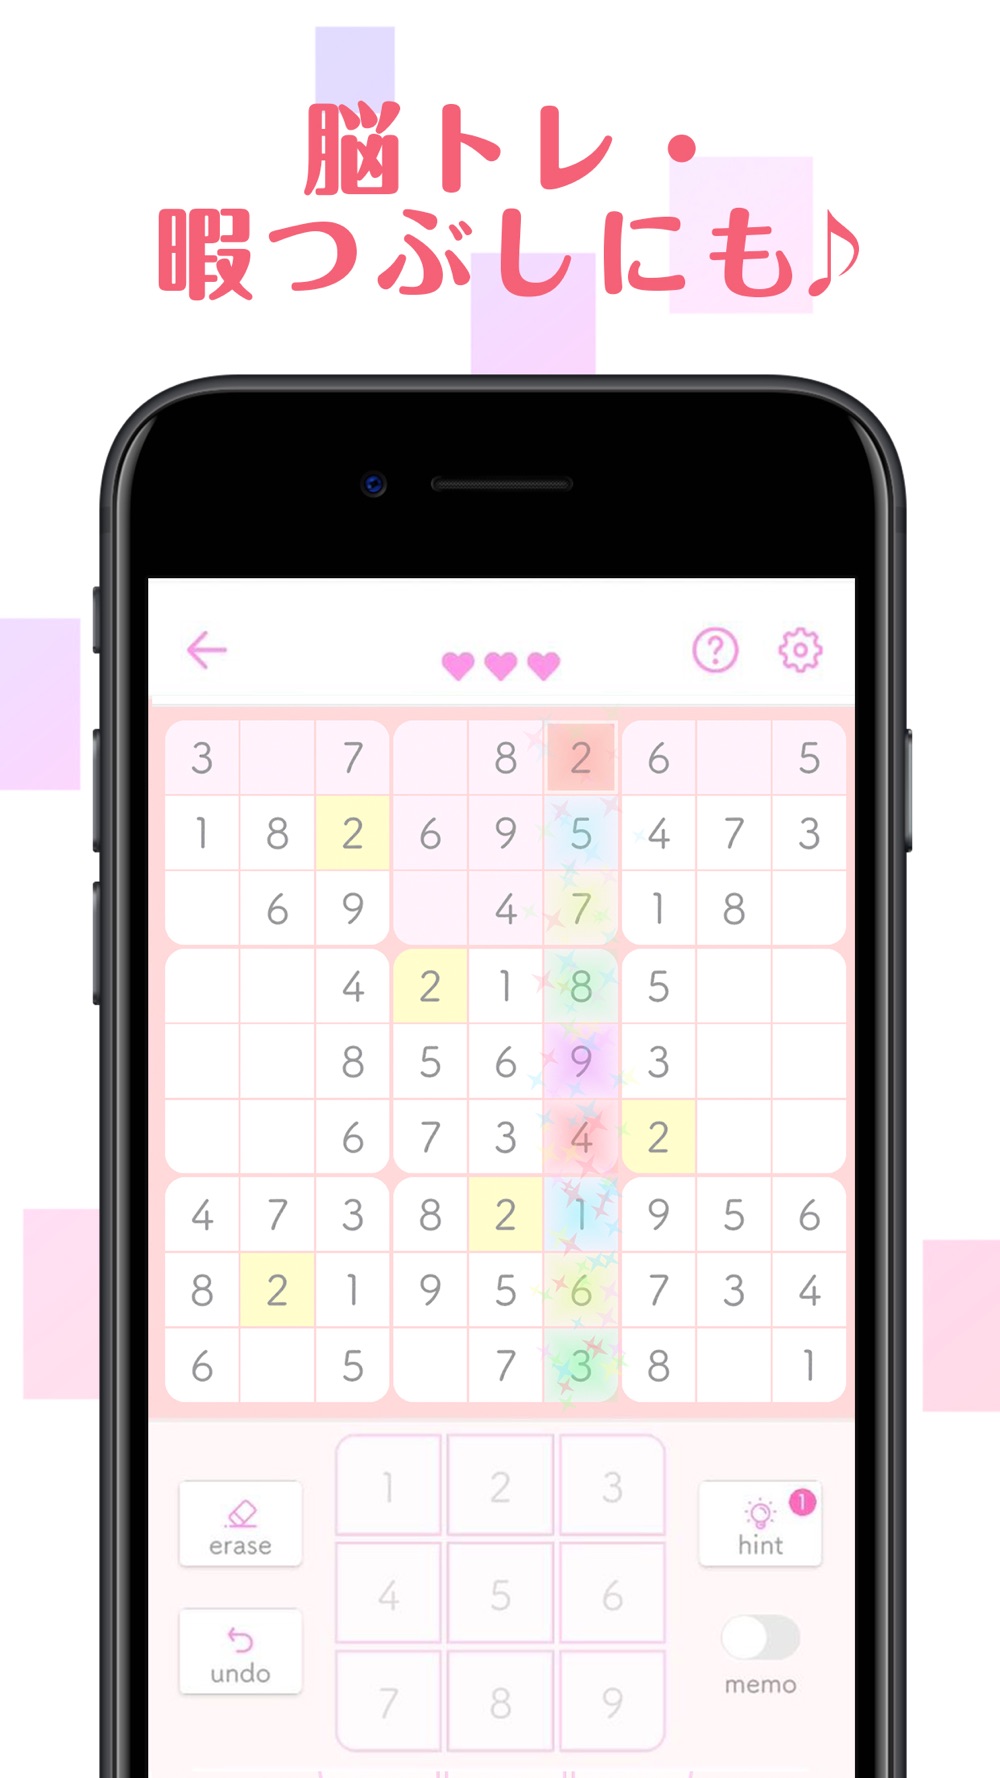 ナンプレ 人気の数字を使ったパズルゲーム Free Download App For Iphone Steprimo Com